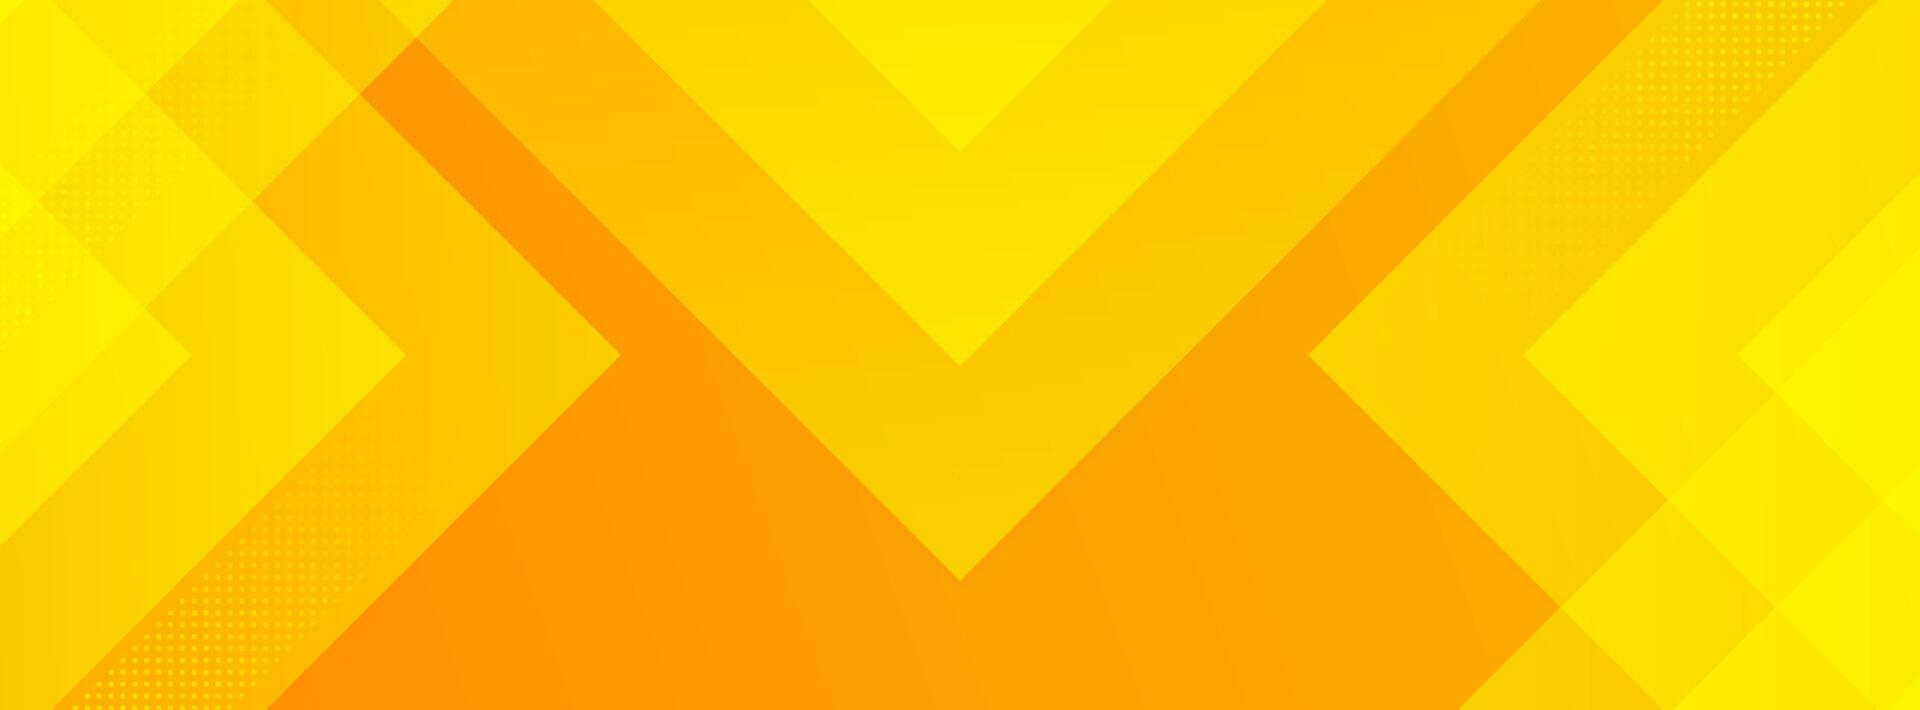 modern banier achtergrond. kleurrijk, geel en oranje gradaties, overlappend, Memphis stijl. vector